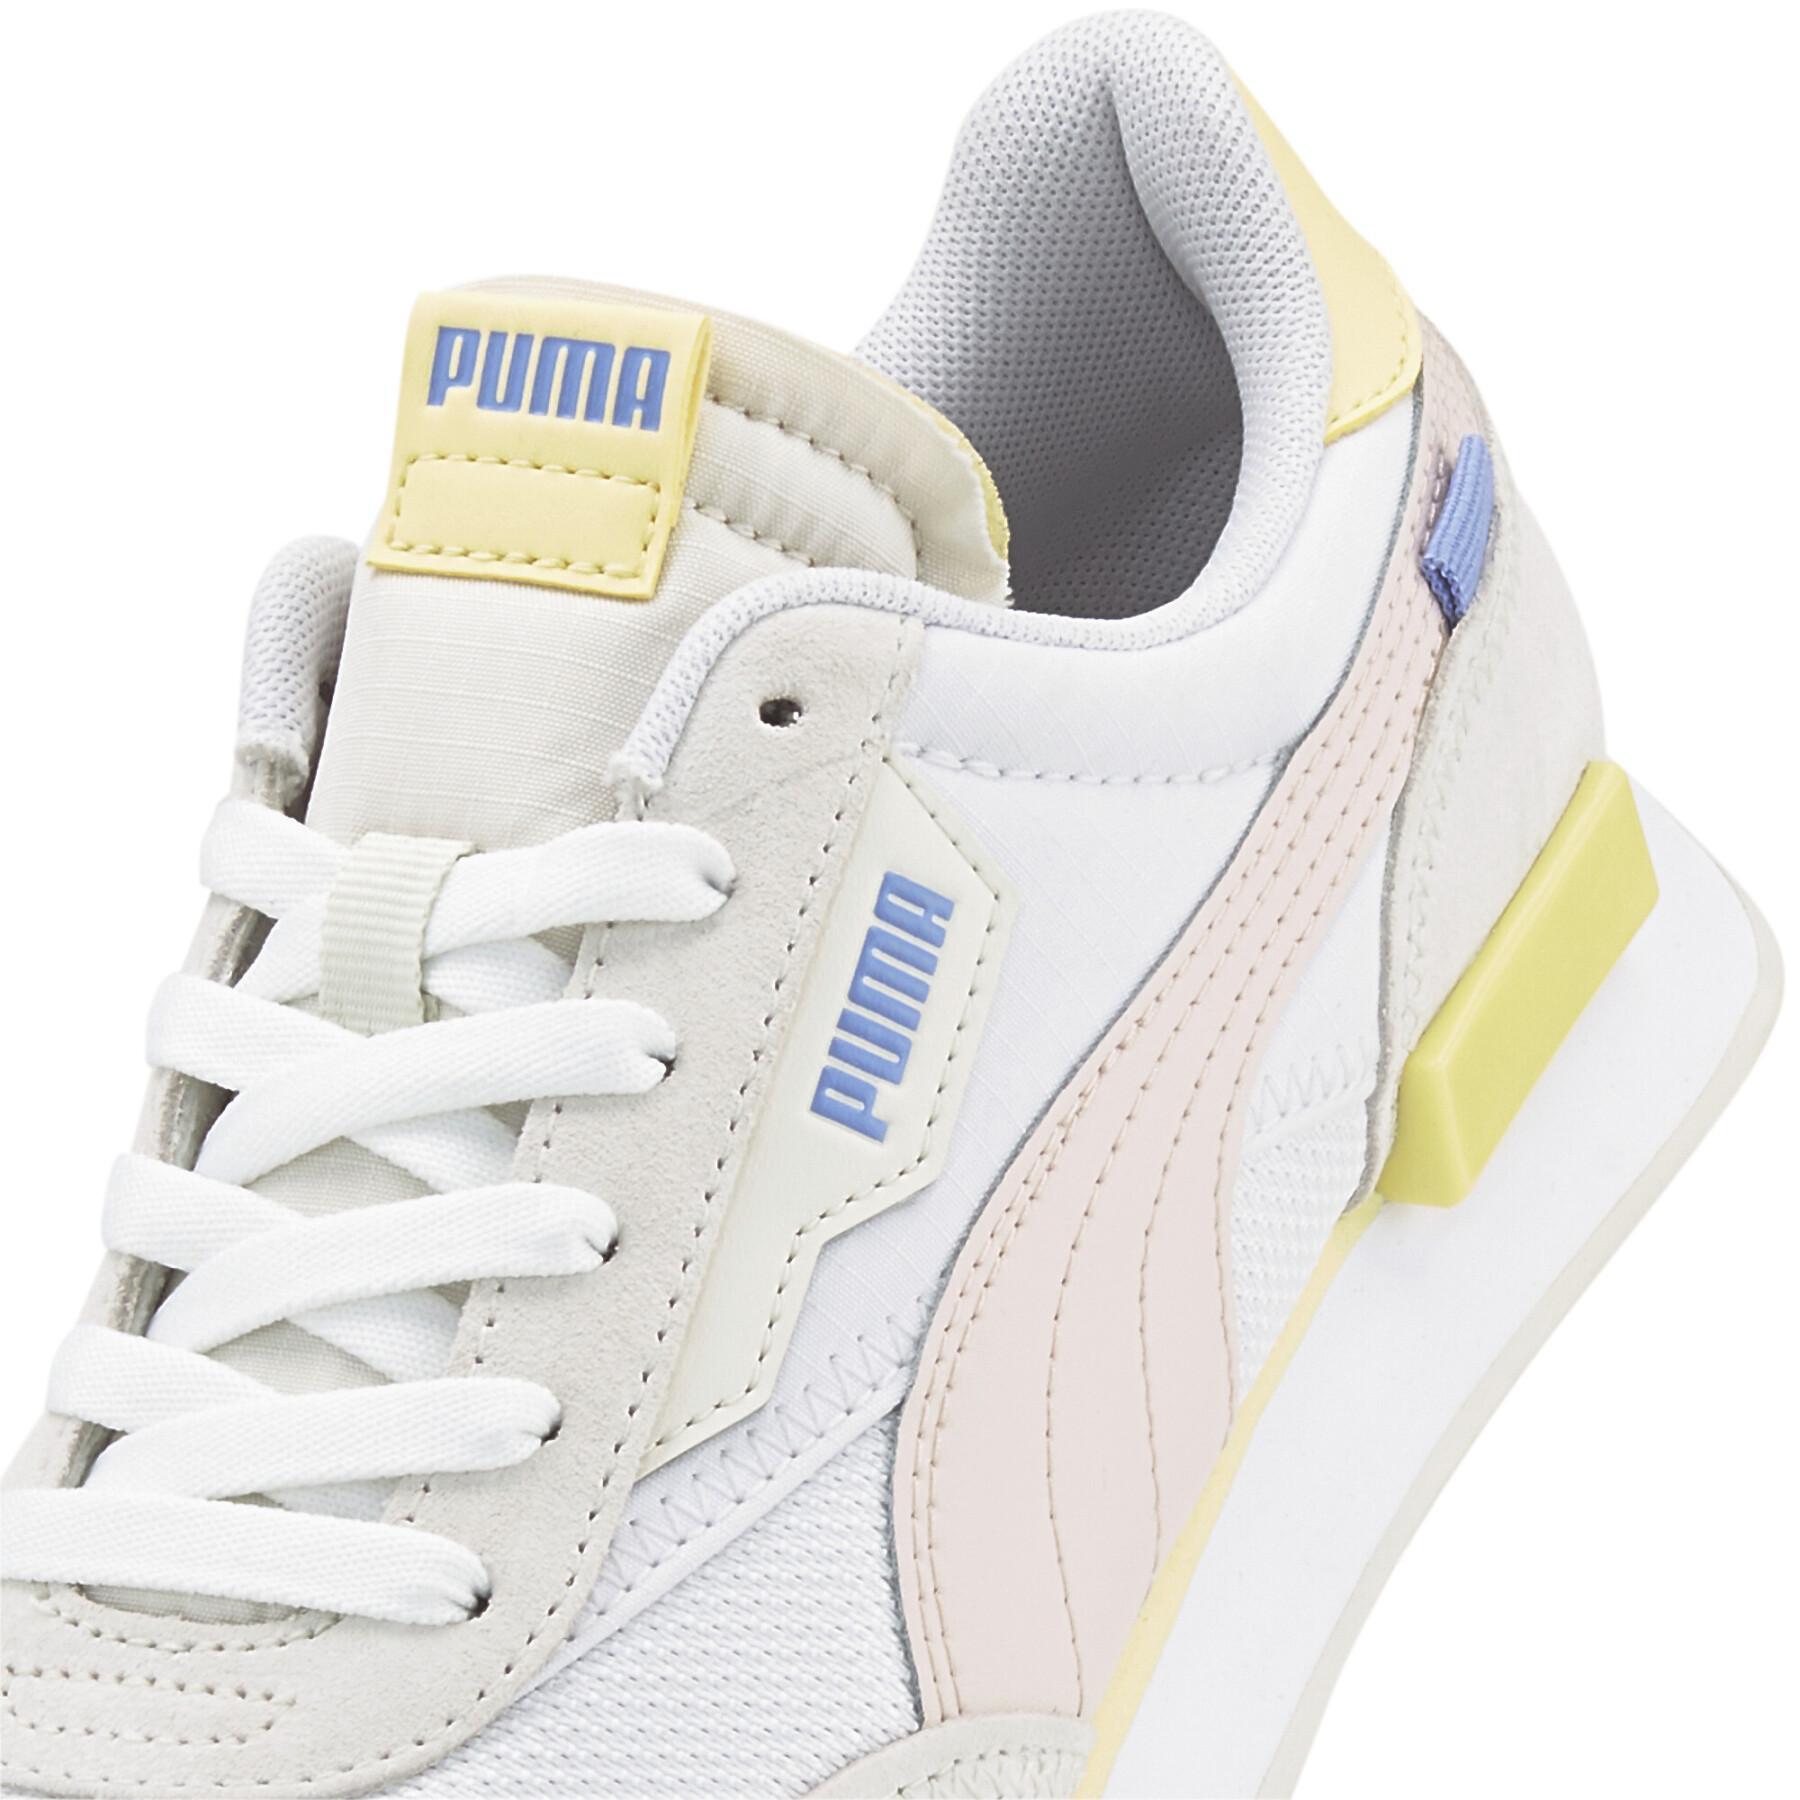 Women's sneakers Puma Future Rider Soft